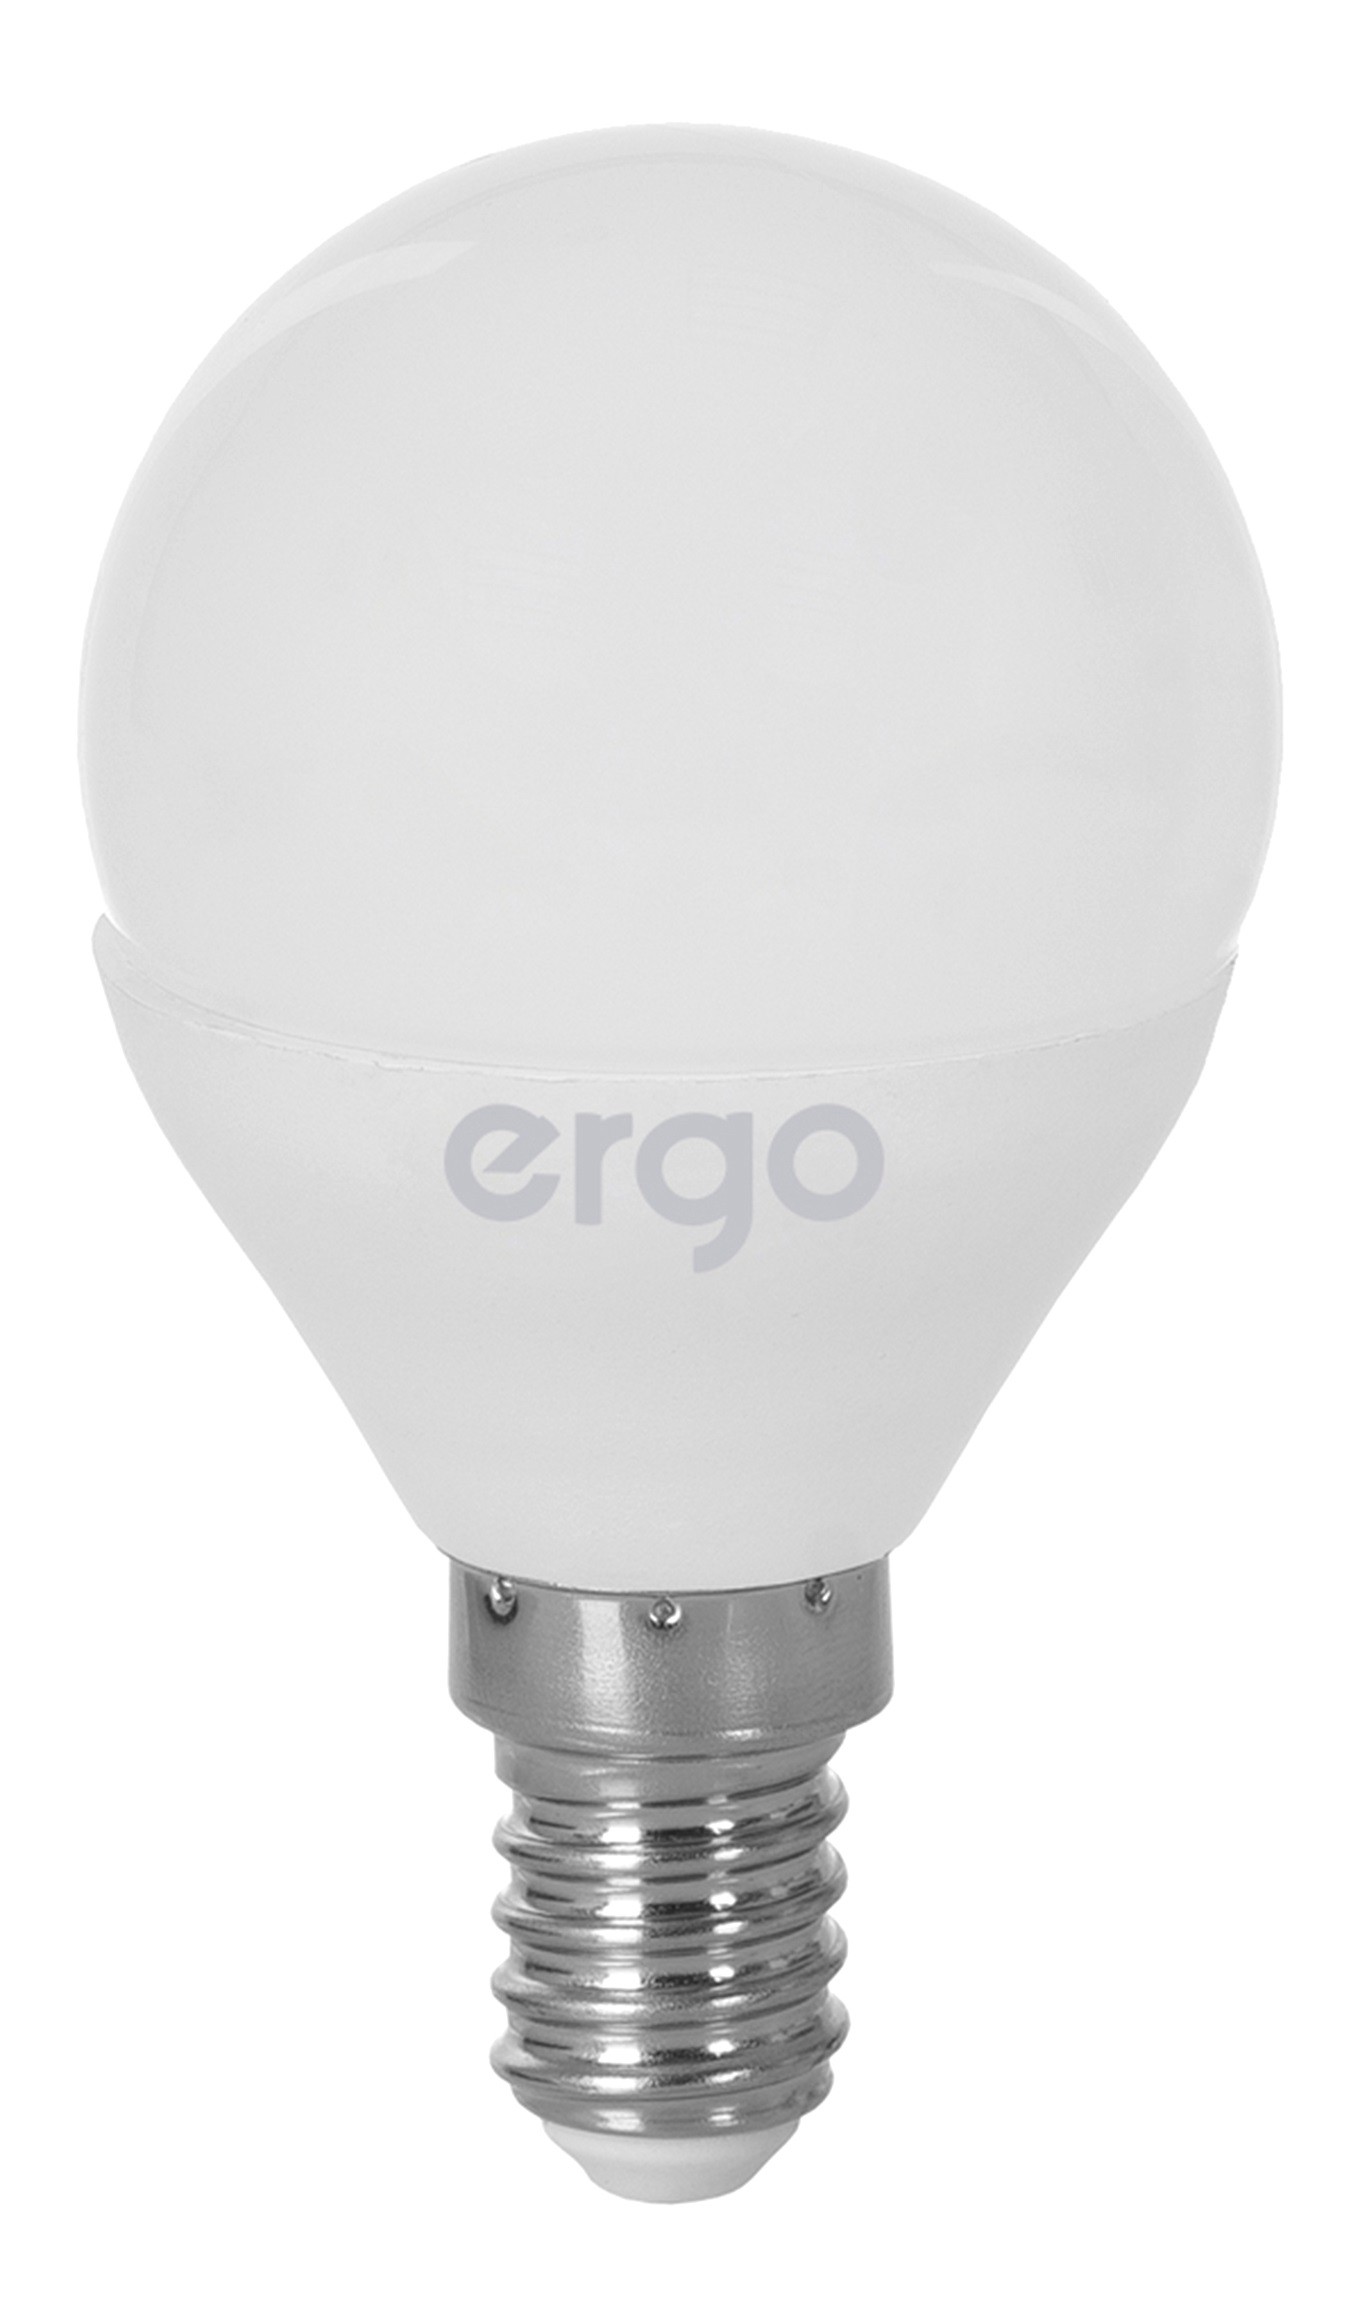 Инструкция лампа ergo светодиодная Ergo Standard G45 e14 5w